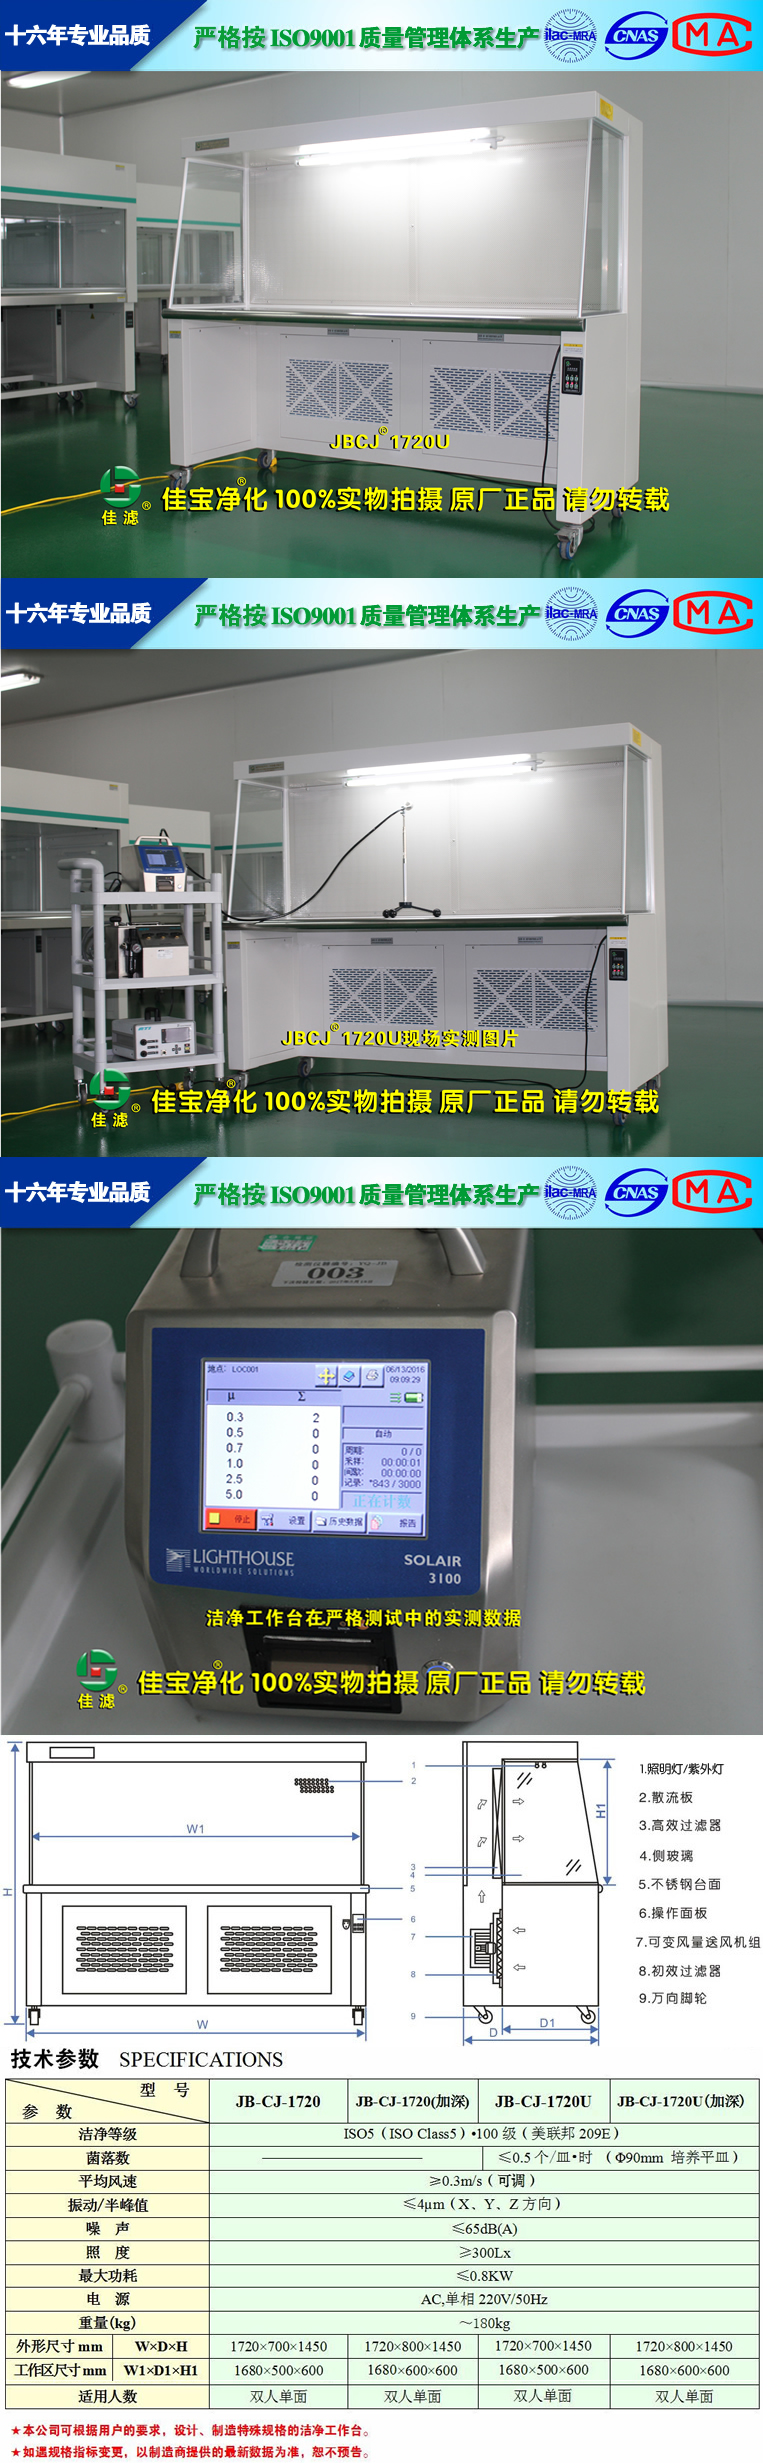 苏州佳宝 JB-CJ-1720U/水平单向气流洁净工作台 超净净化工作台